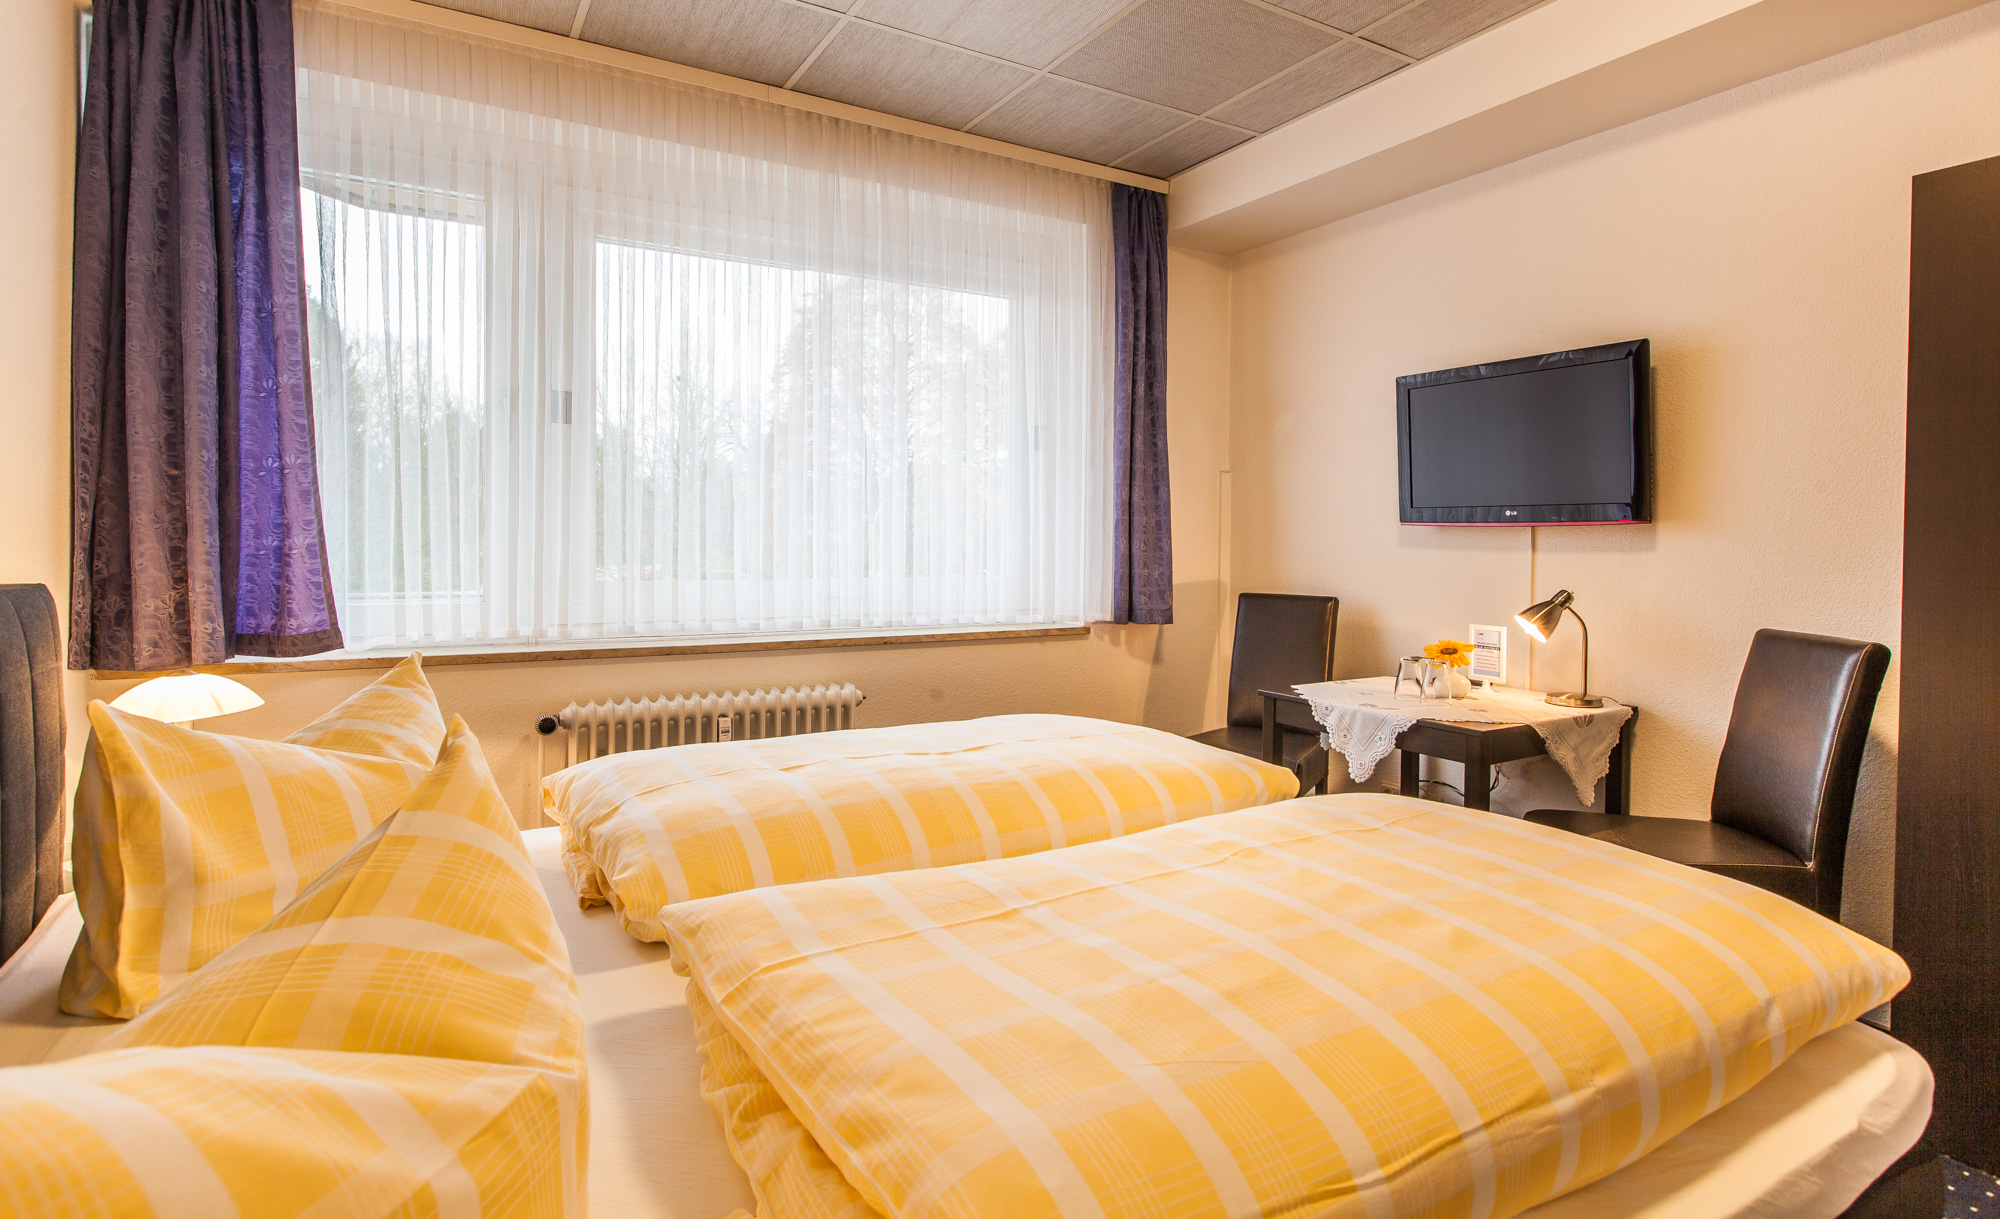 Ihr Zimmer im Hotel Quellental in Pinneberg bei Hamburg